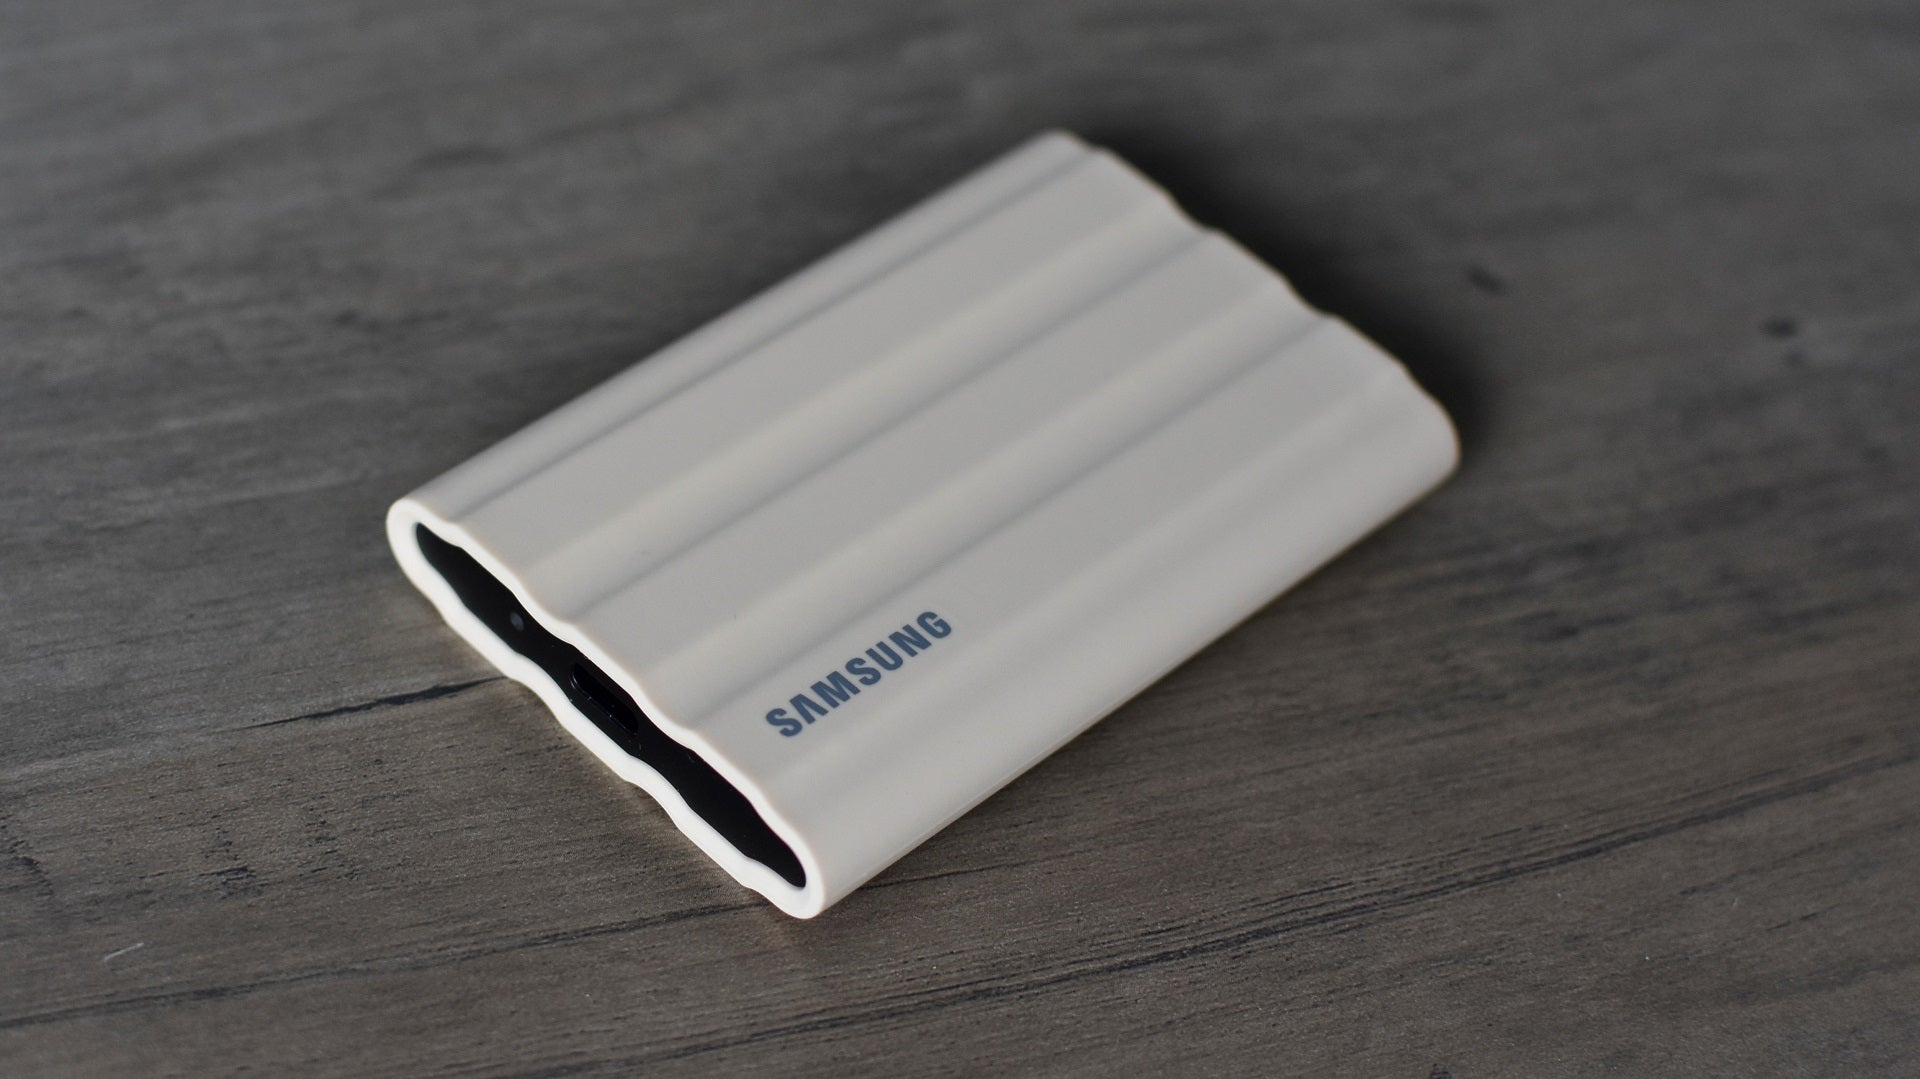 Compre este SSD portátil Samsung T7 Shield de 2 TB por £ 148 após um desconto de £ 40